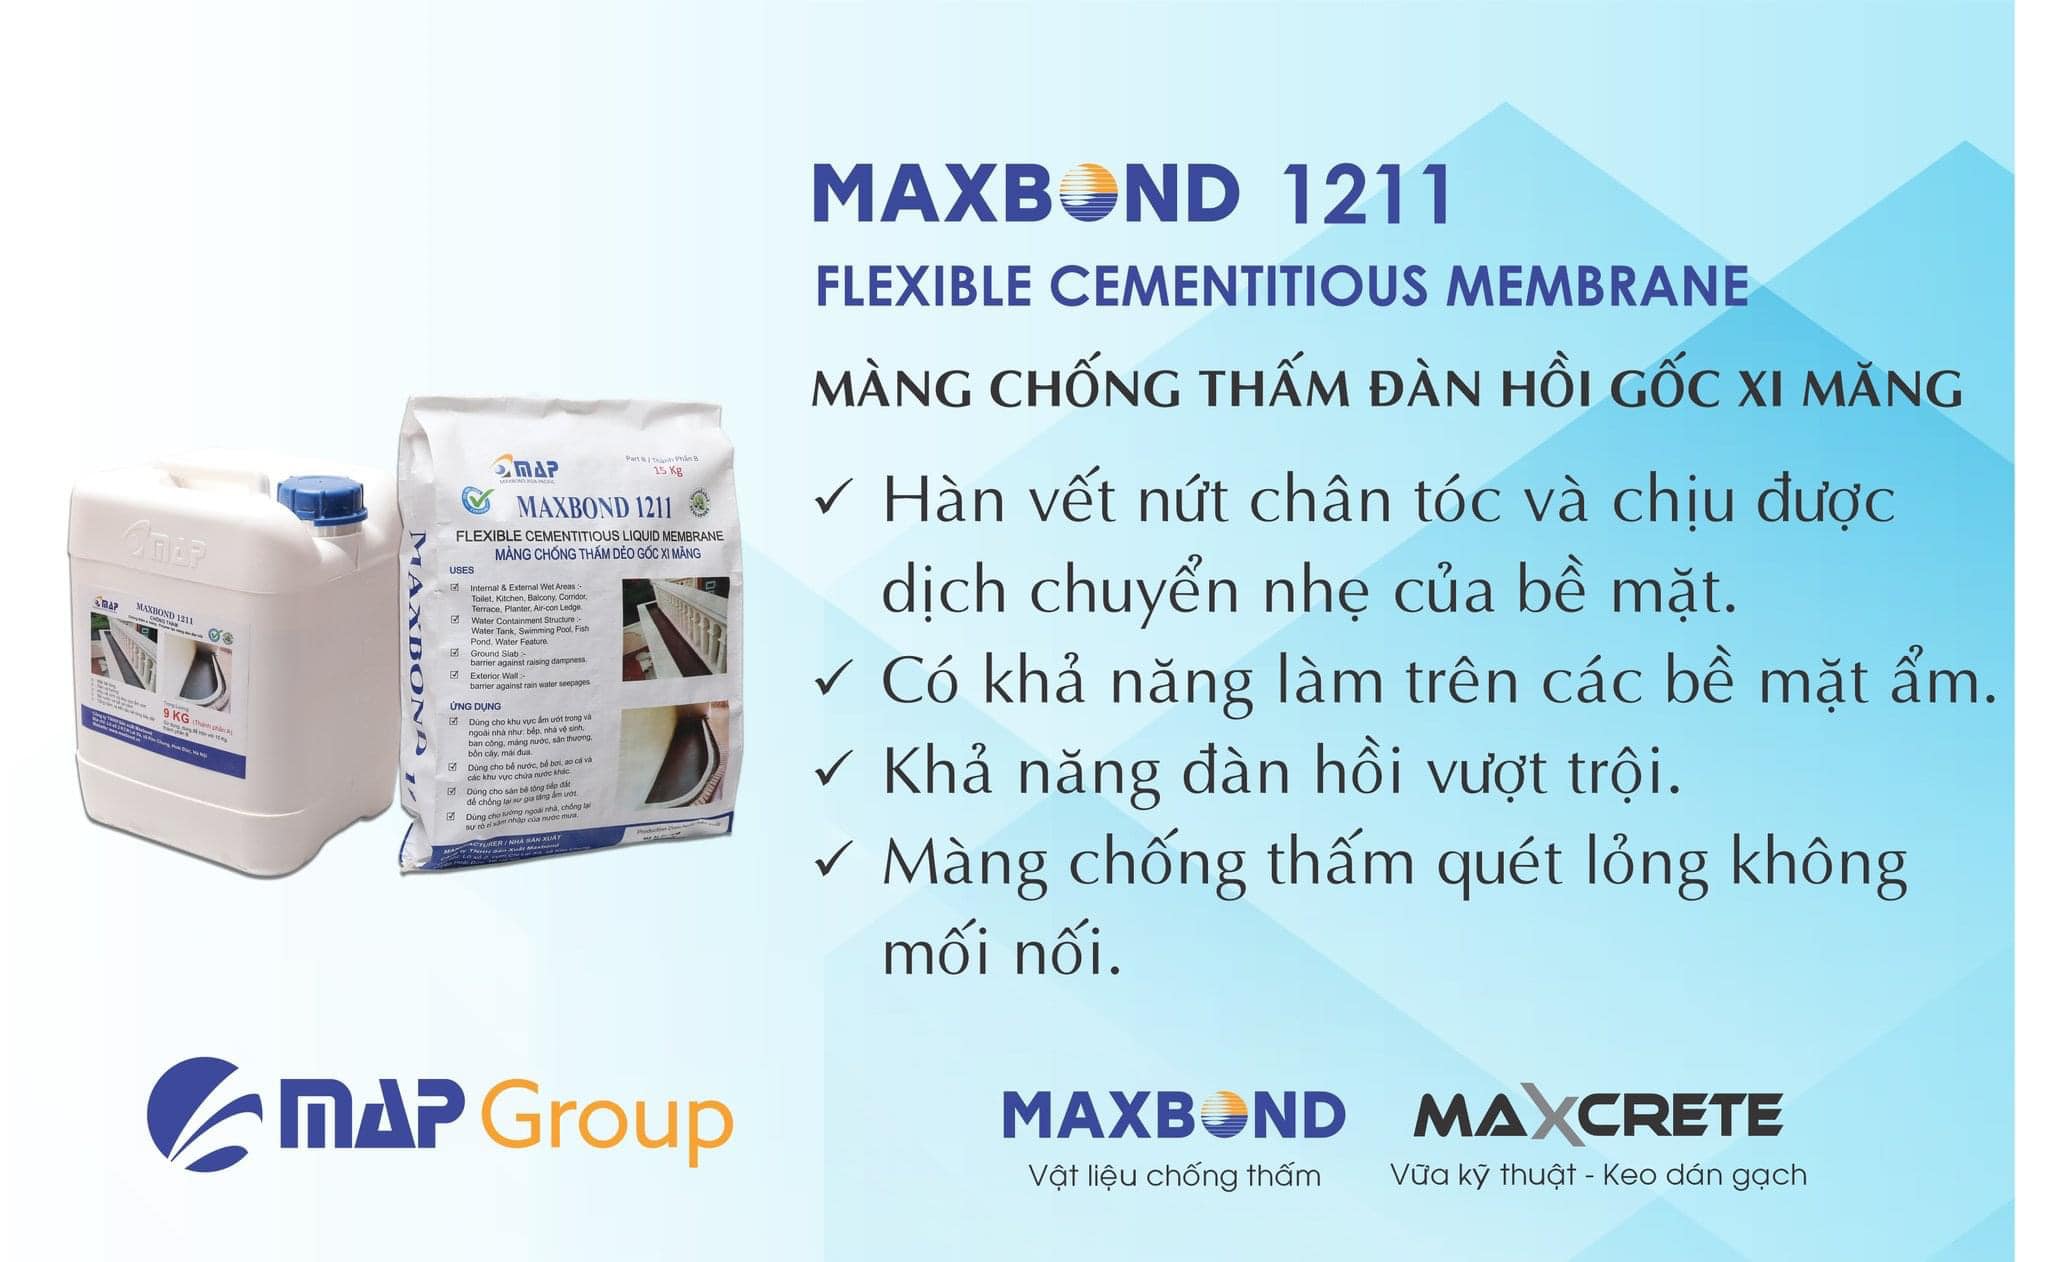 maxbond 1211 chong tham dan hoi goc xi mang